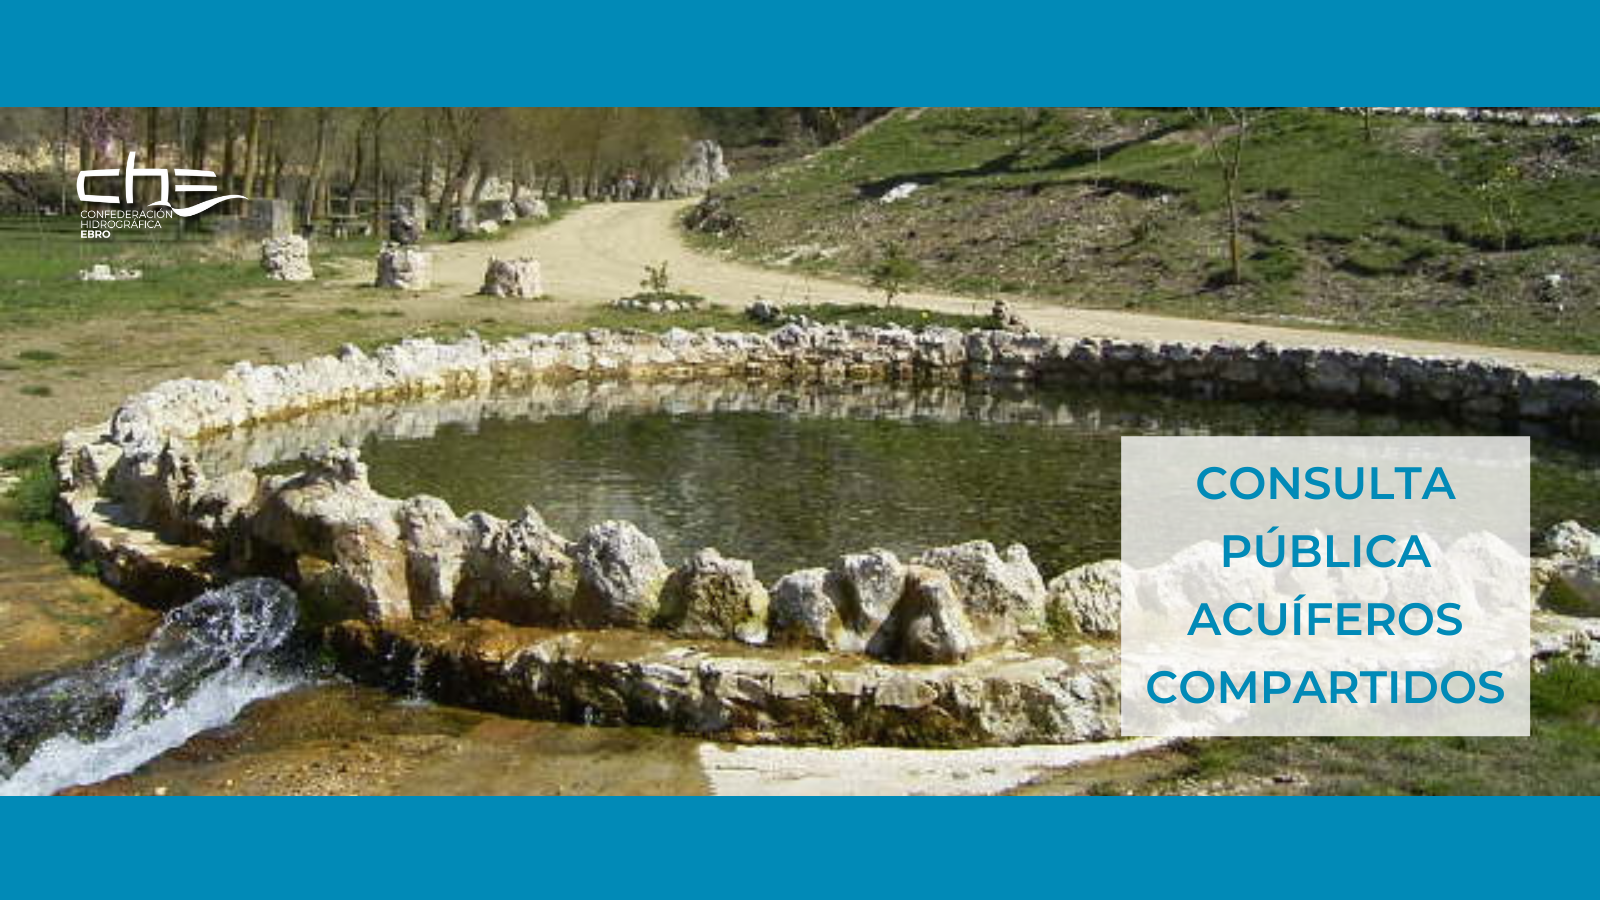 Imagen noticia - MITECO inicia la consulta pública para la declaración de acuíferos compartidos entre la CHE y otros organismos de cuenca